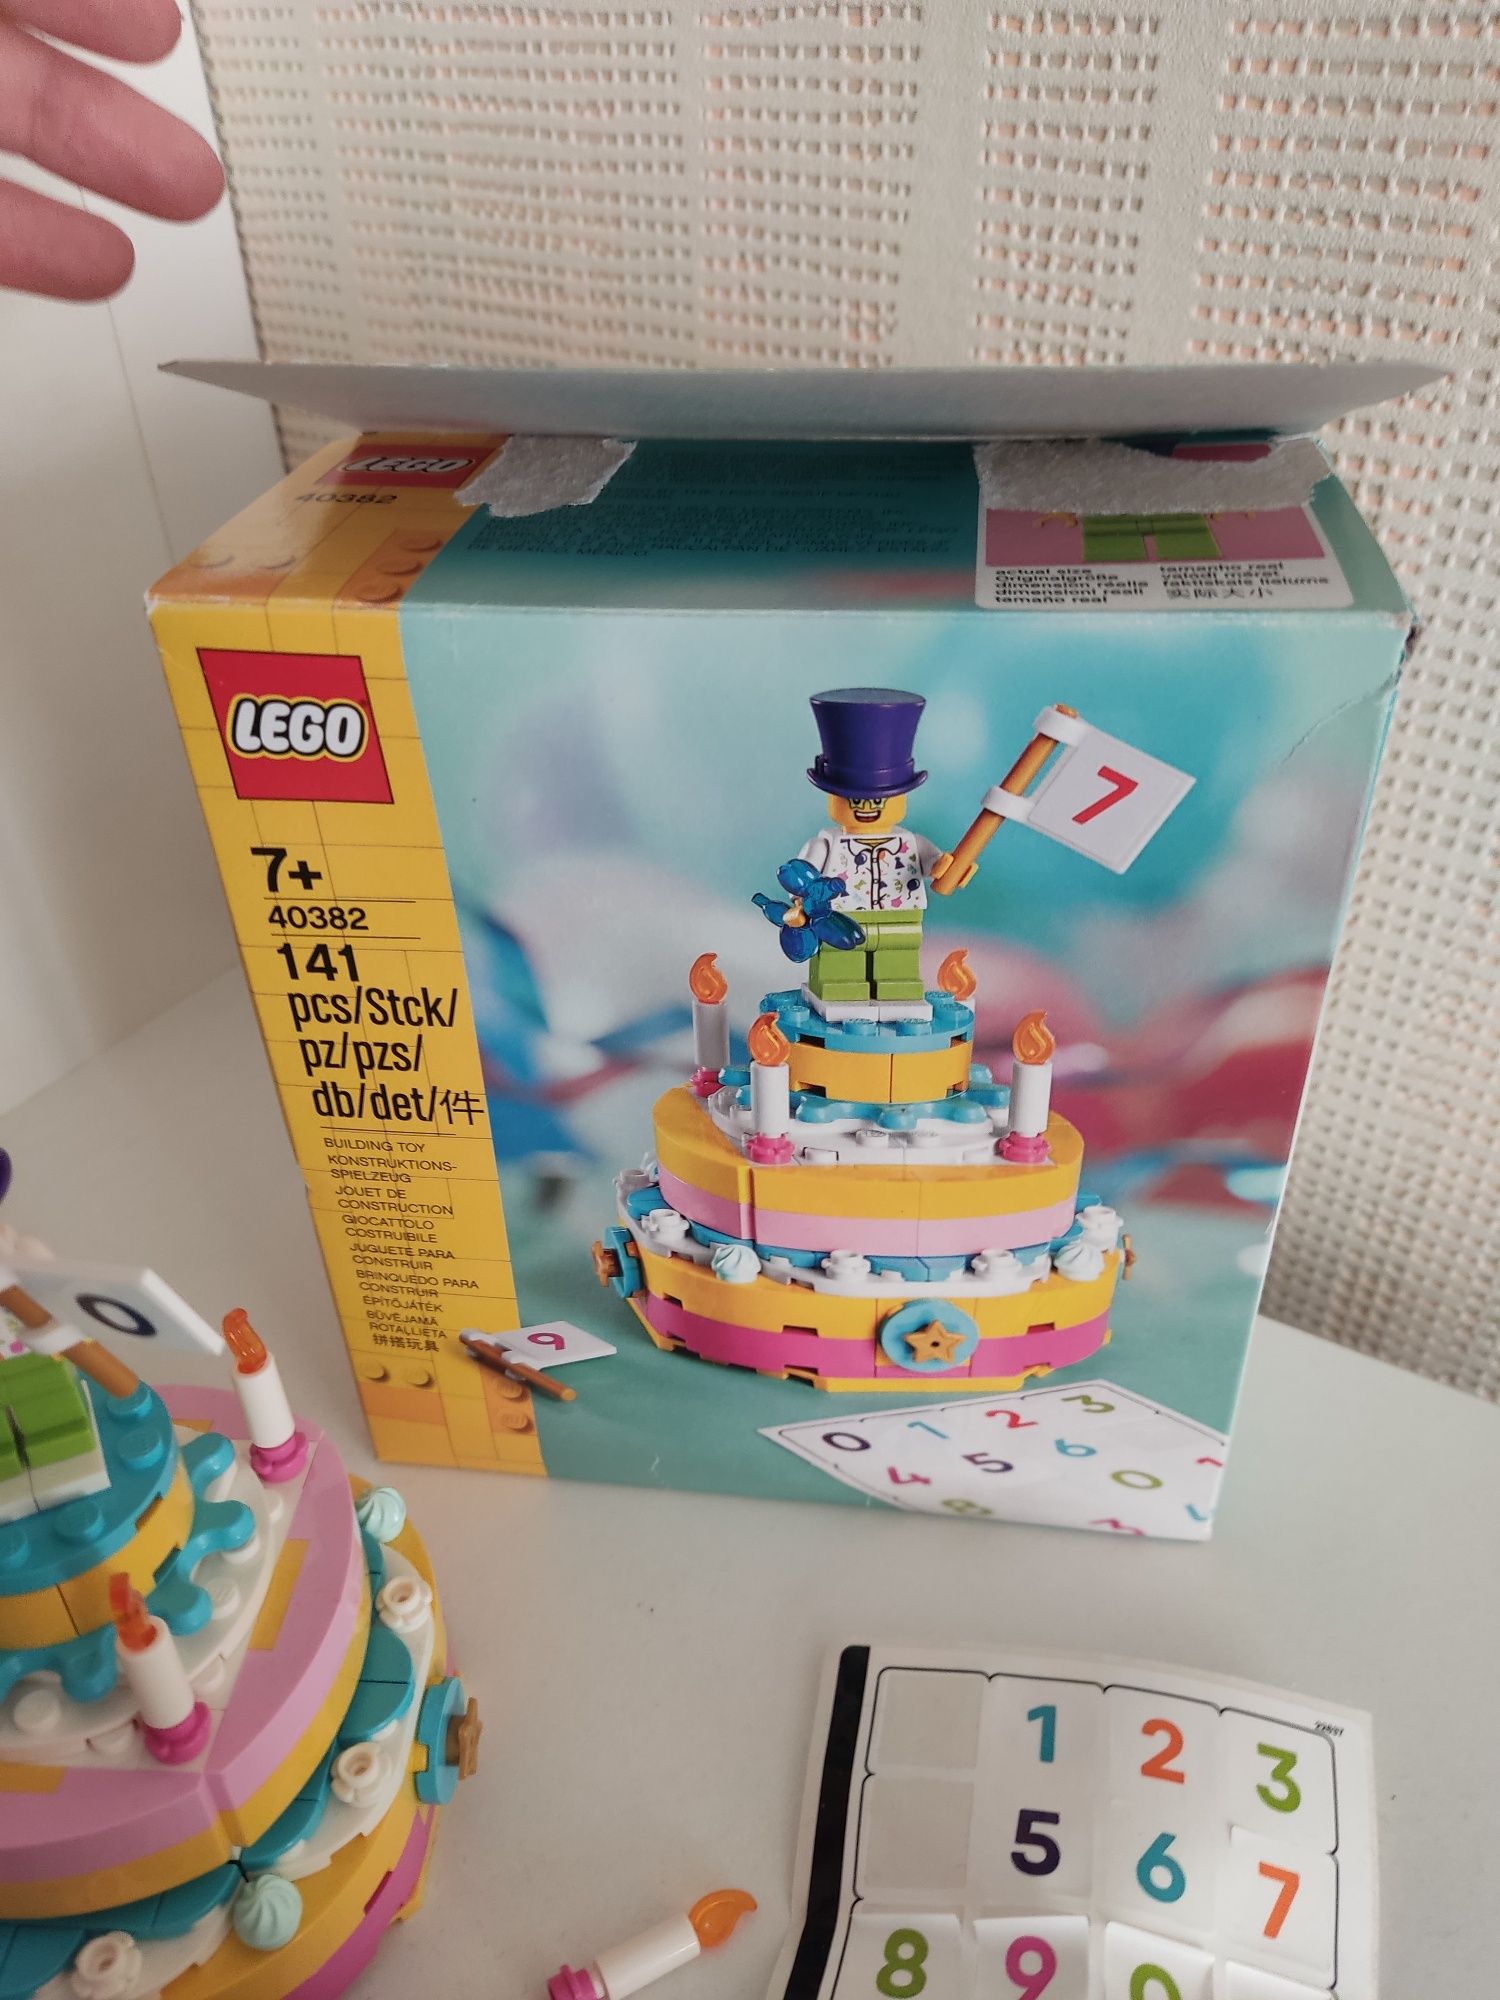 LEGO Seasonal Набор ко дню рождения (40382)